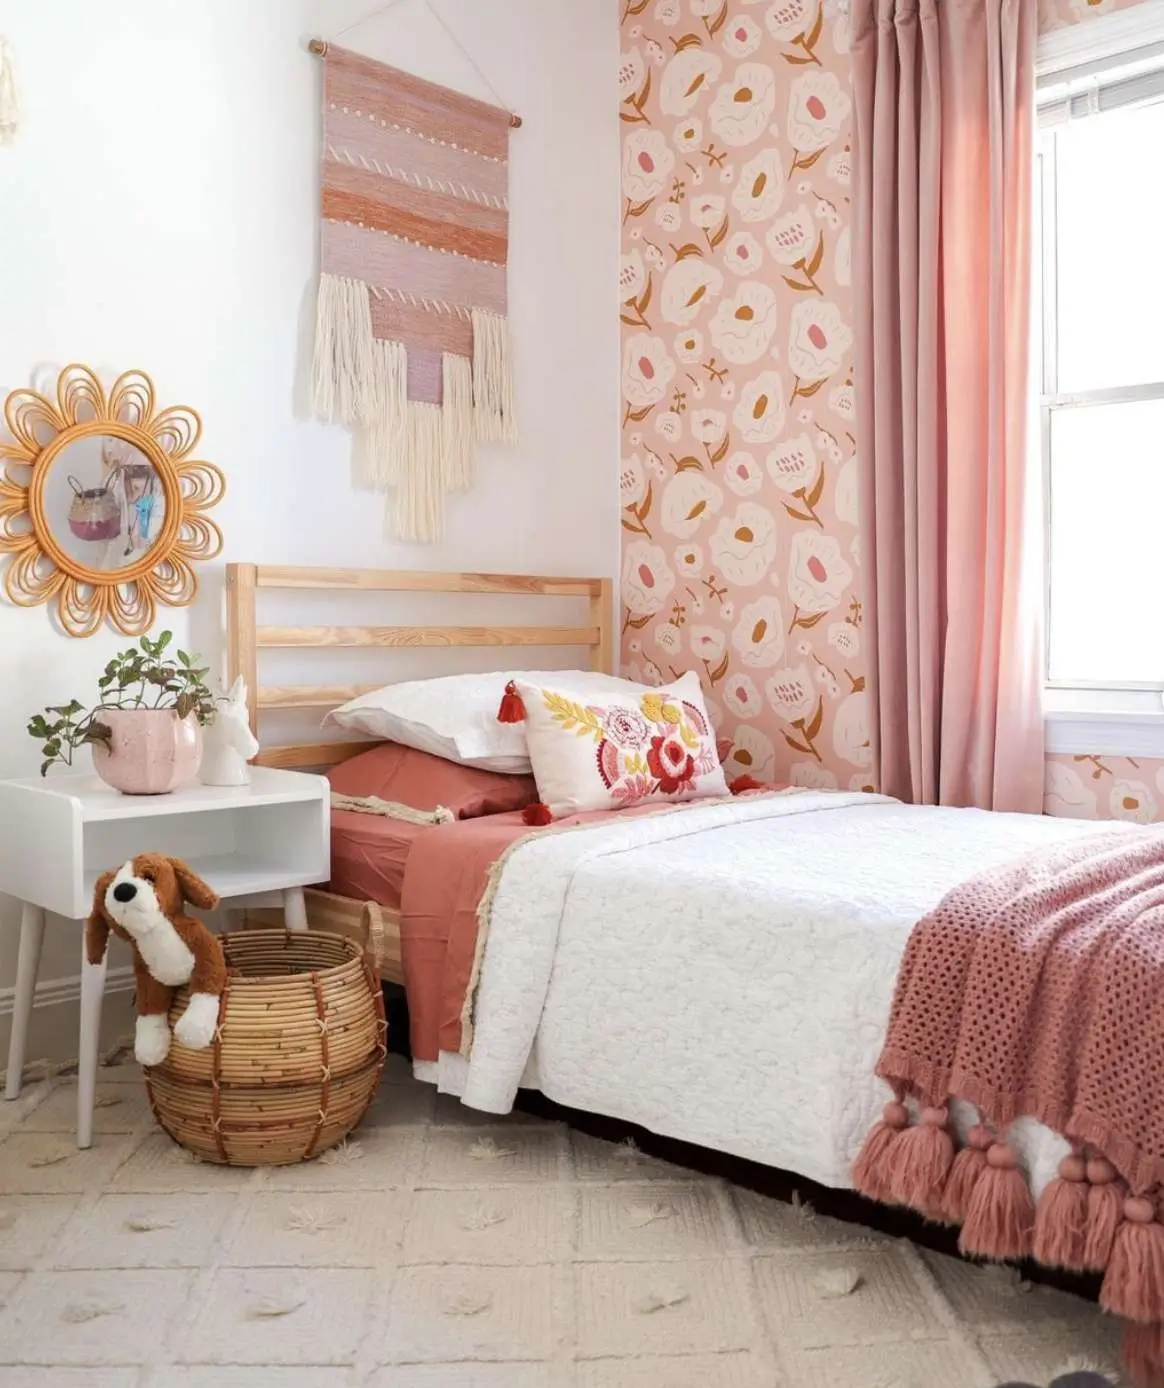 Trang trí phòng ngủ nhỏ cho nữ nên sử dụng màu sắc tươi sáng.